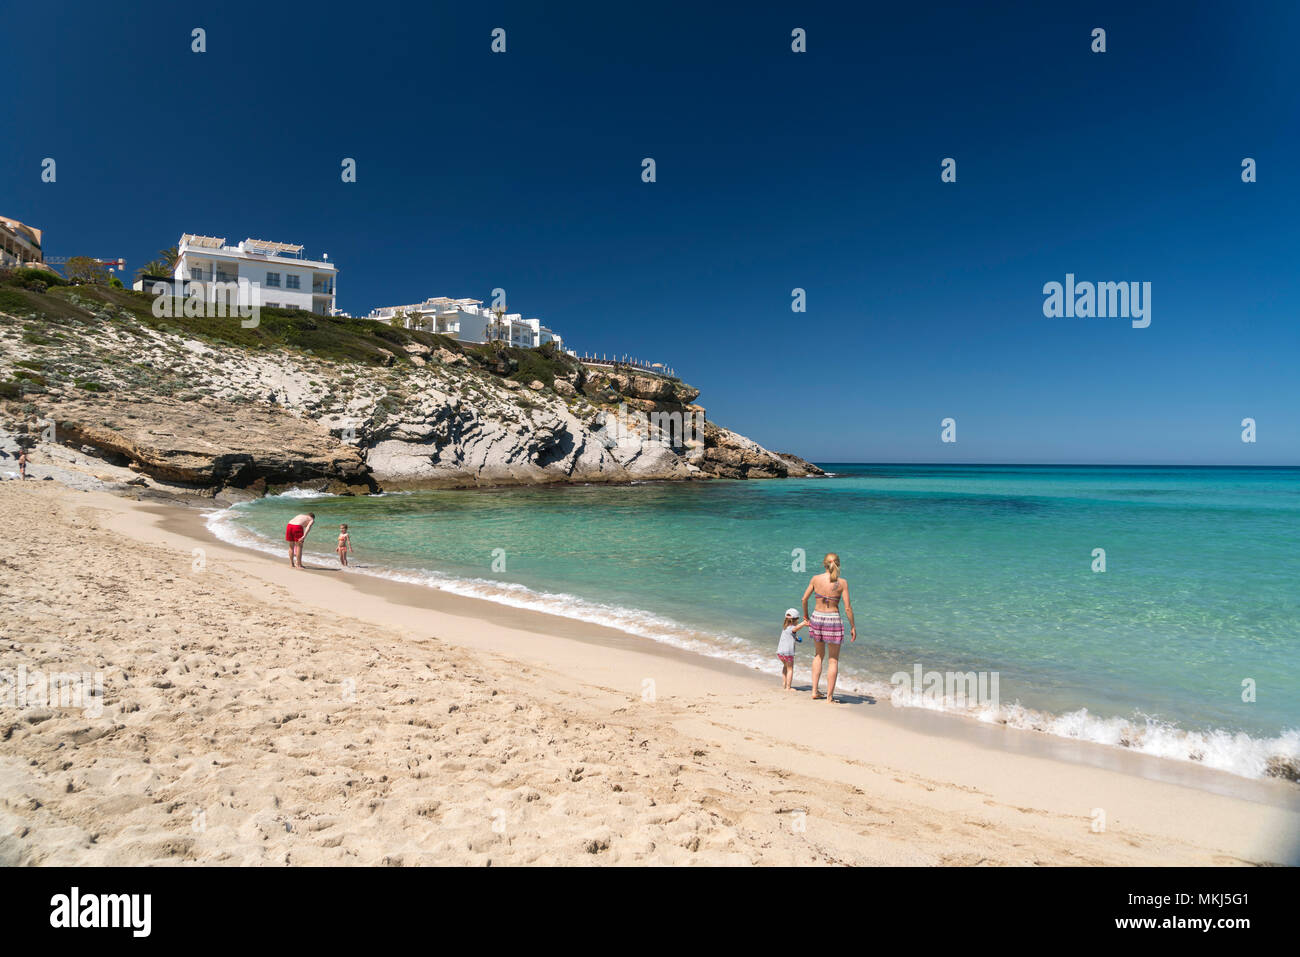 Strand und Bucht der Cala Mesquida, Capdepera, Mallorca, Balearen, Spanien  | Cala Mesquida beach and bay, Capdepera, Majorca, Balearic Islands, Spain Stock Photo